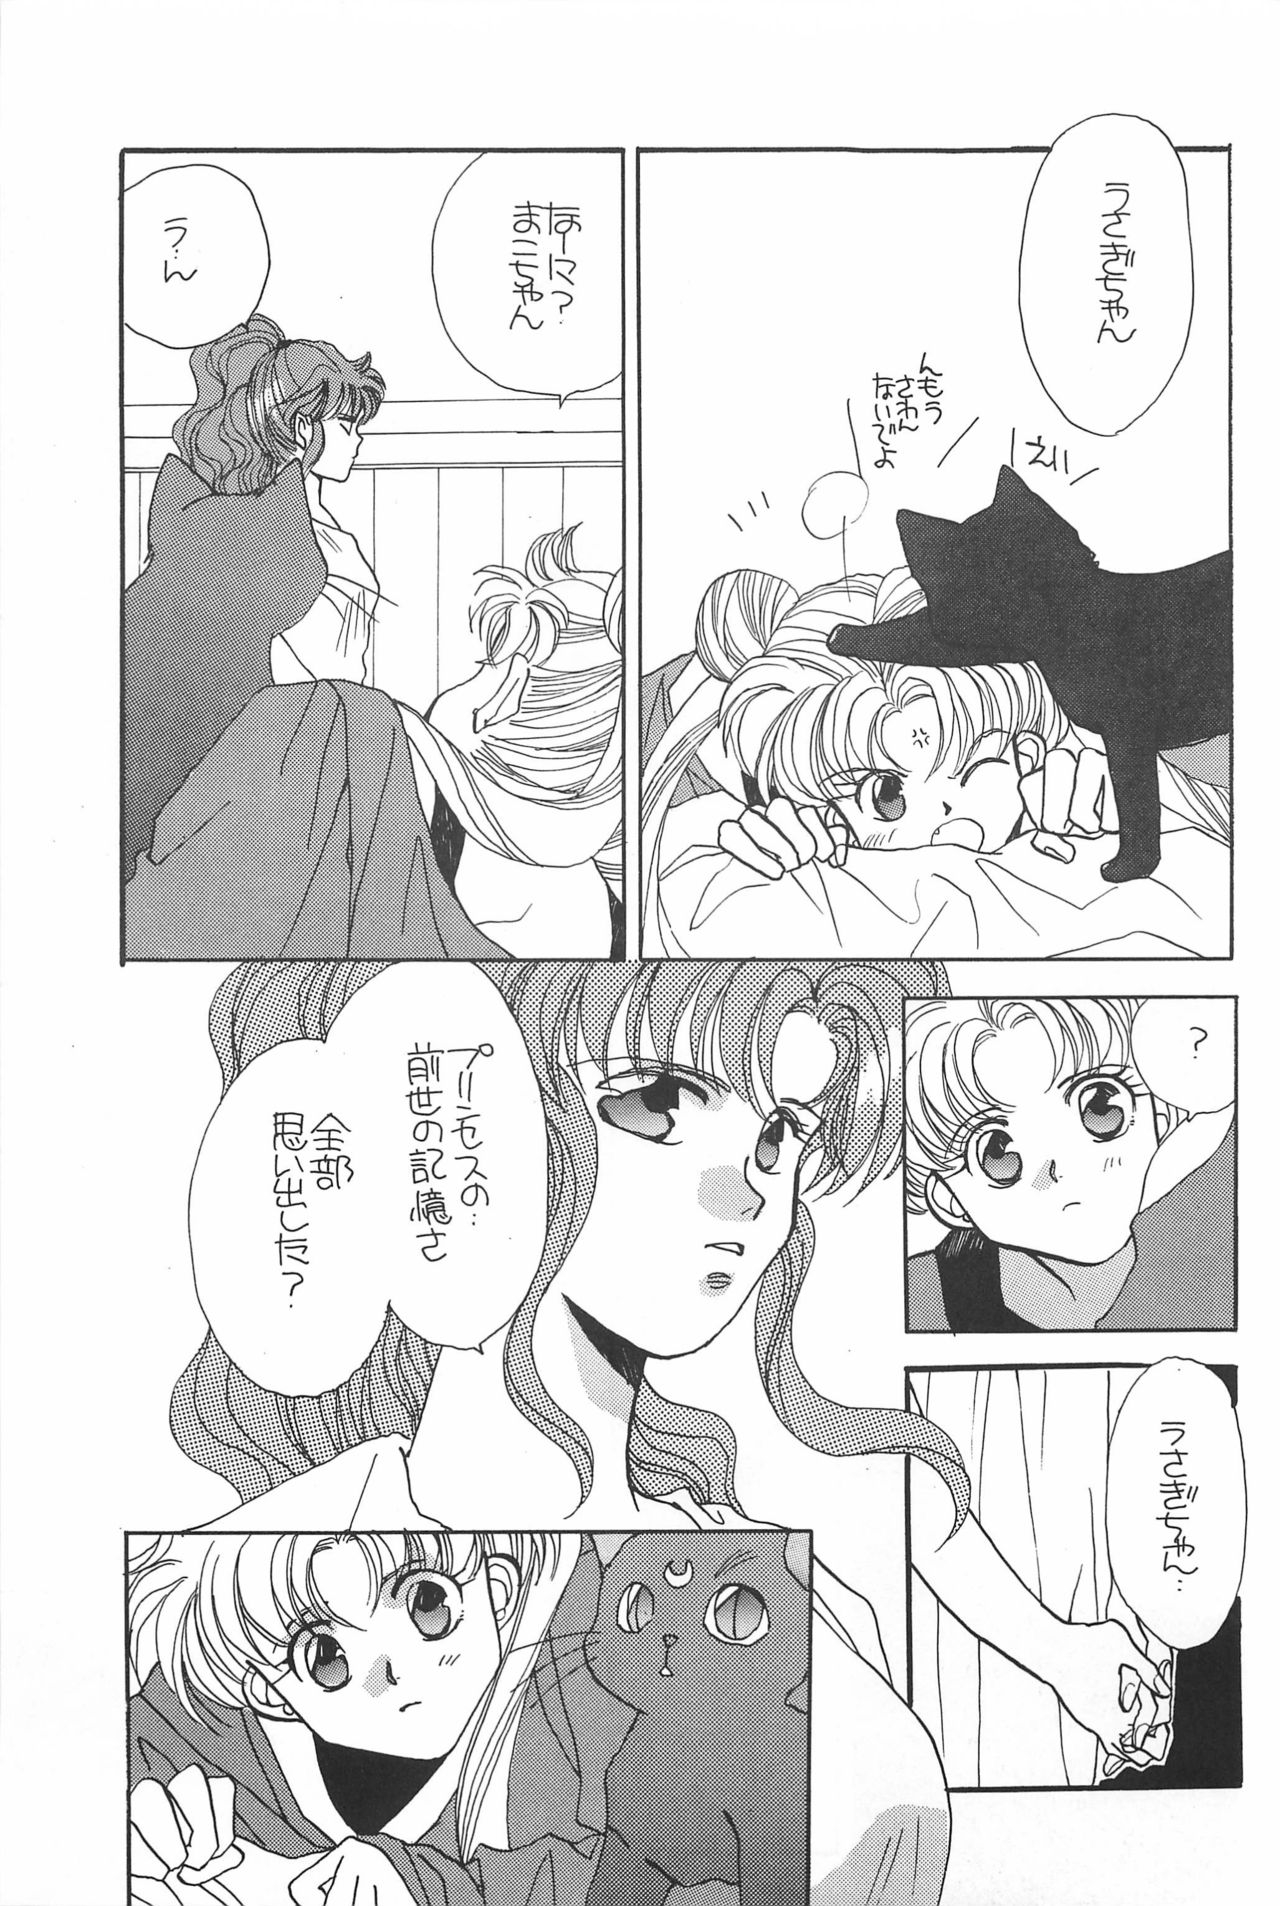 [Hello World (Muttri Moony)] Kaze no You ni Yume no You ni - Sailor Moon Collection (Sailor Moon) 154